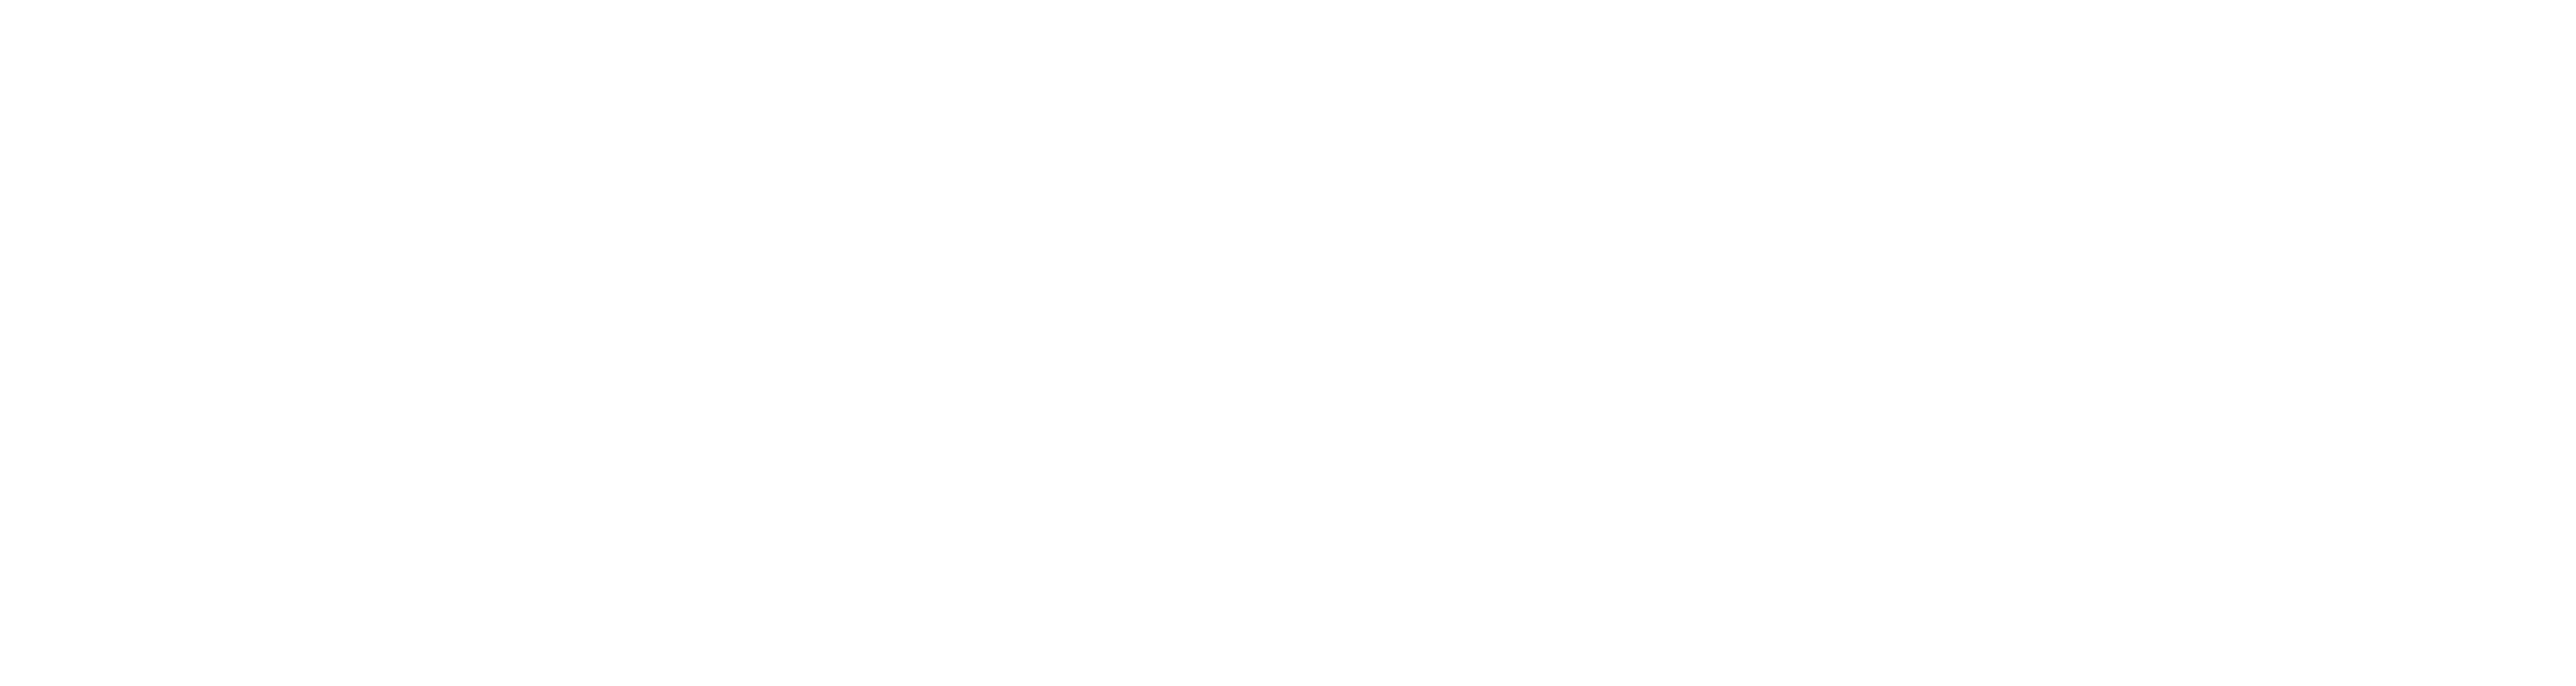 Moonflower Marketing Indianapolis White Horizontal Logo